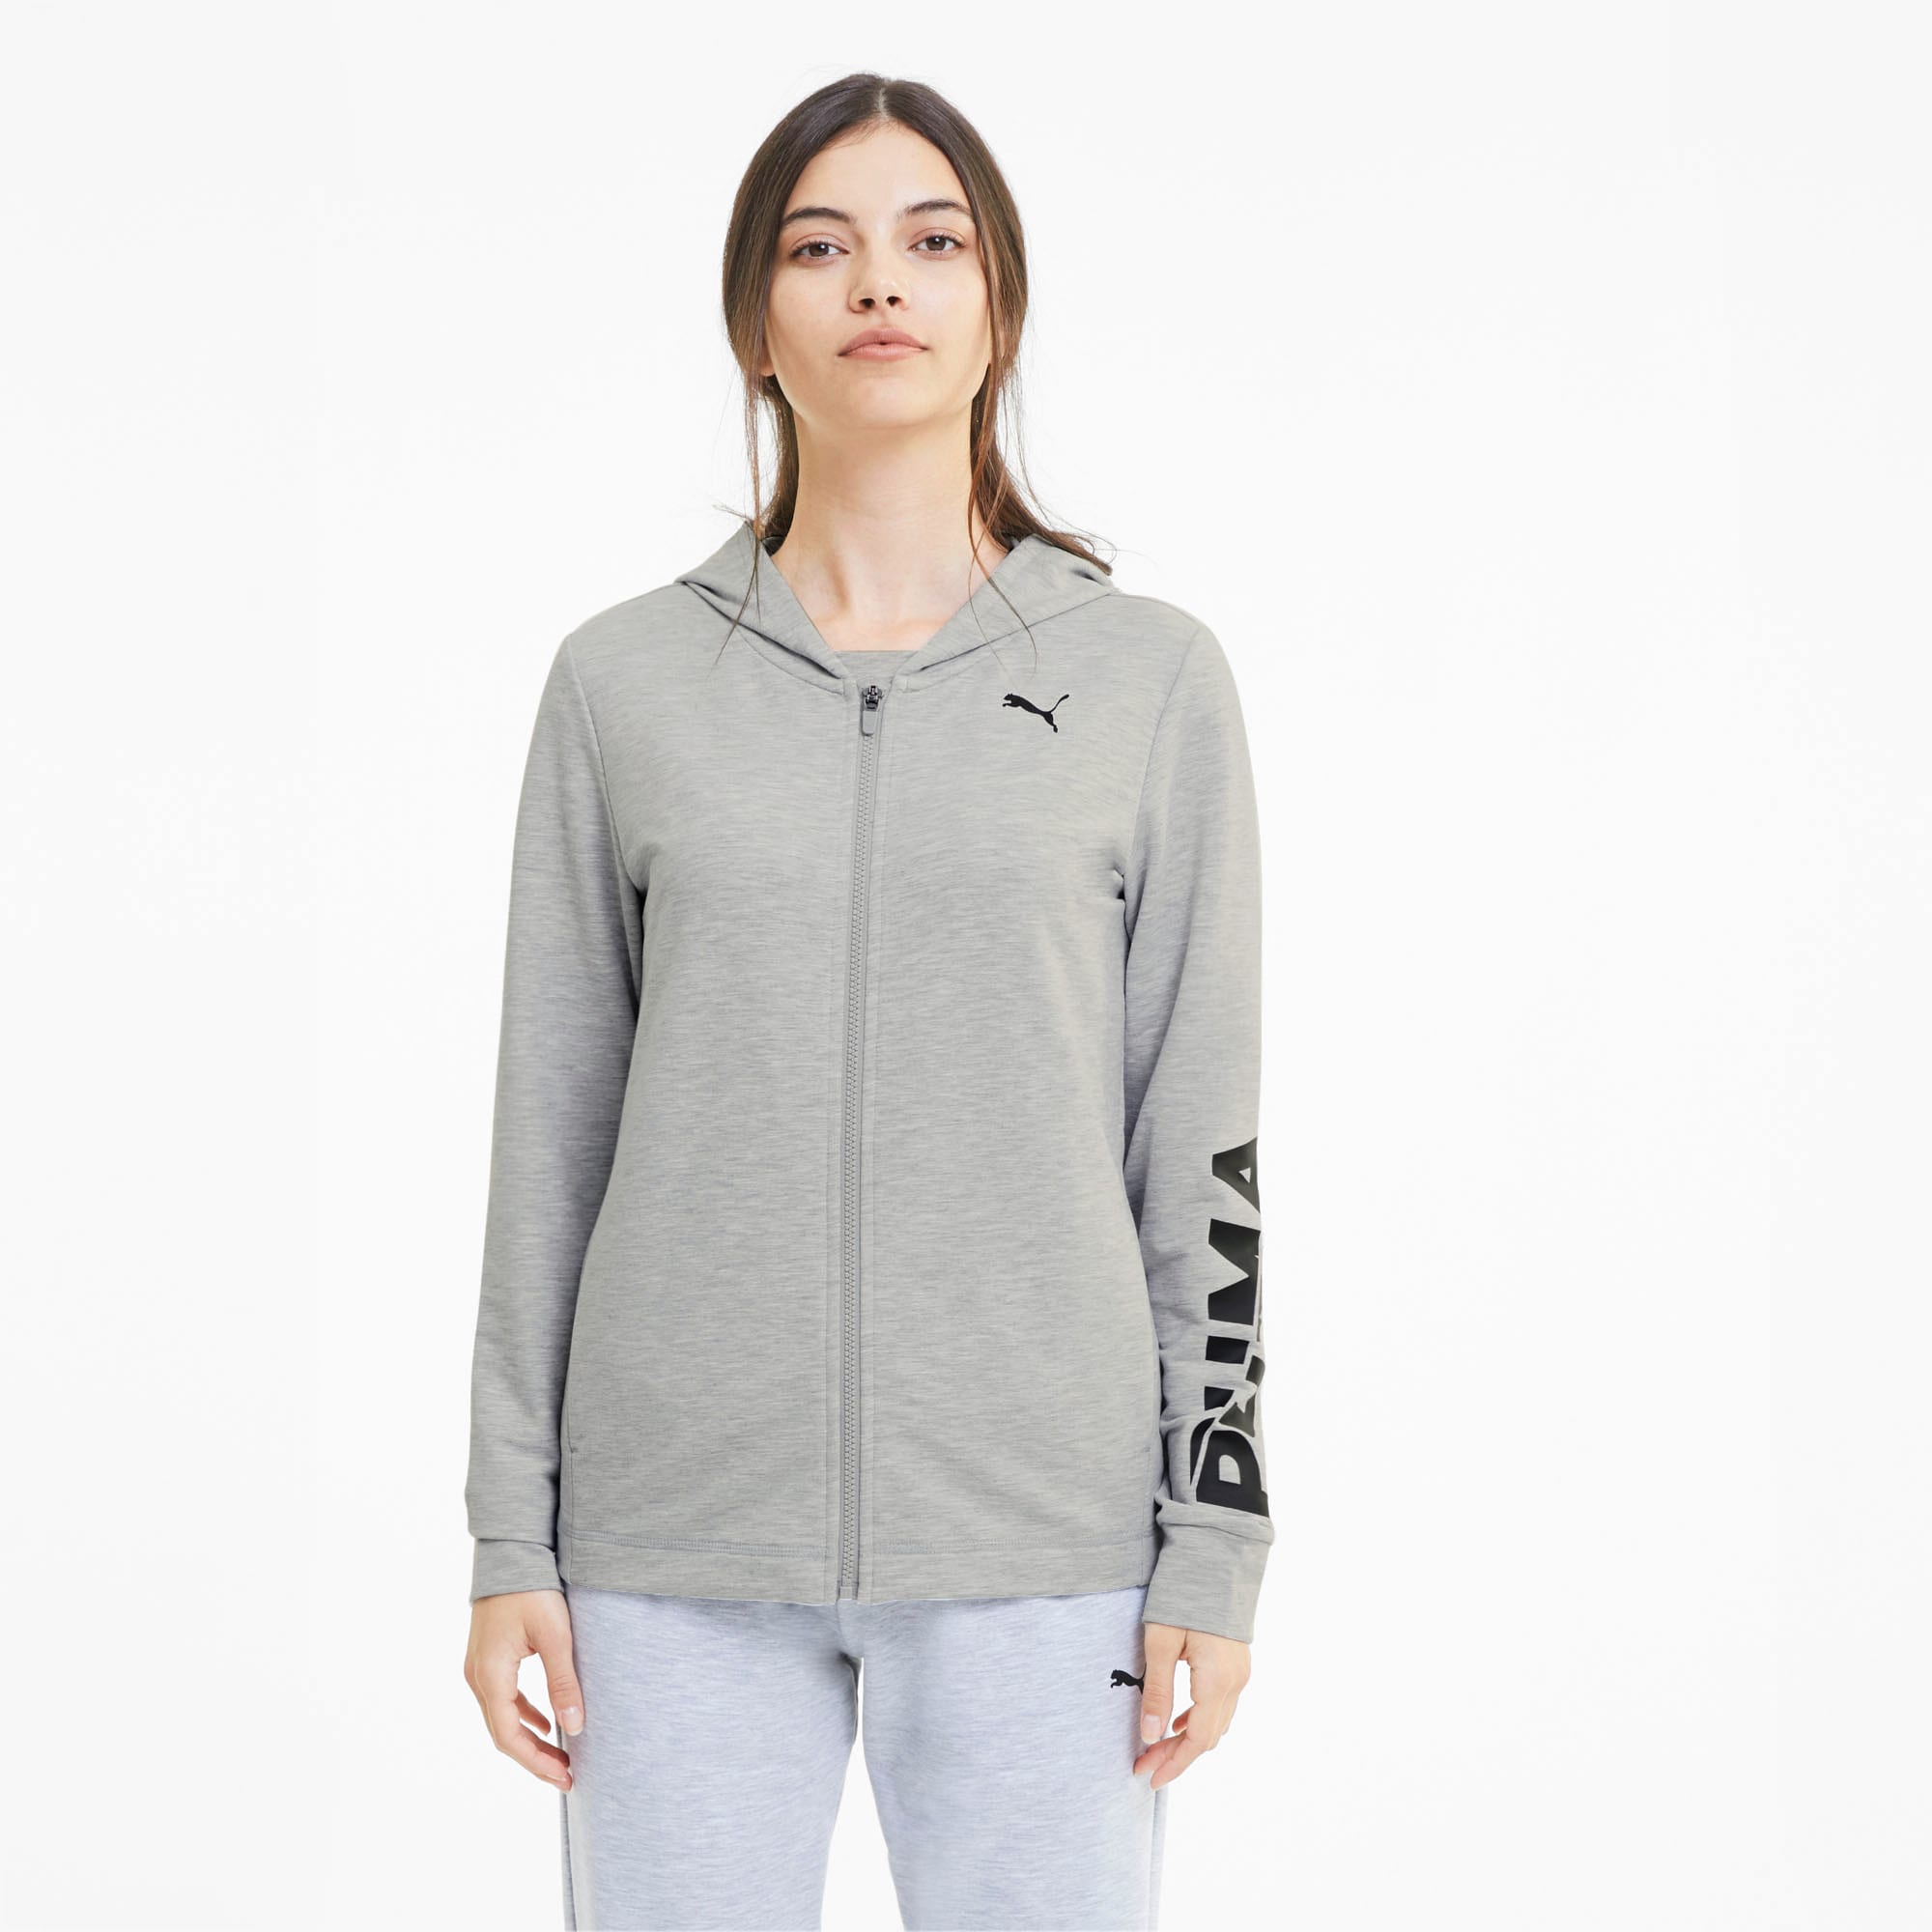 gray zip hoodie women's